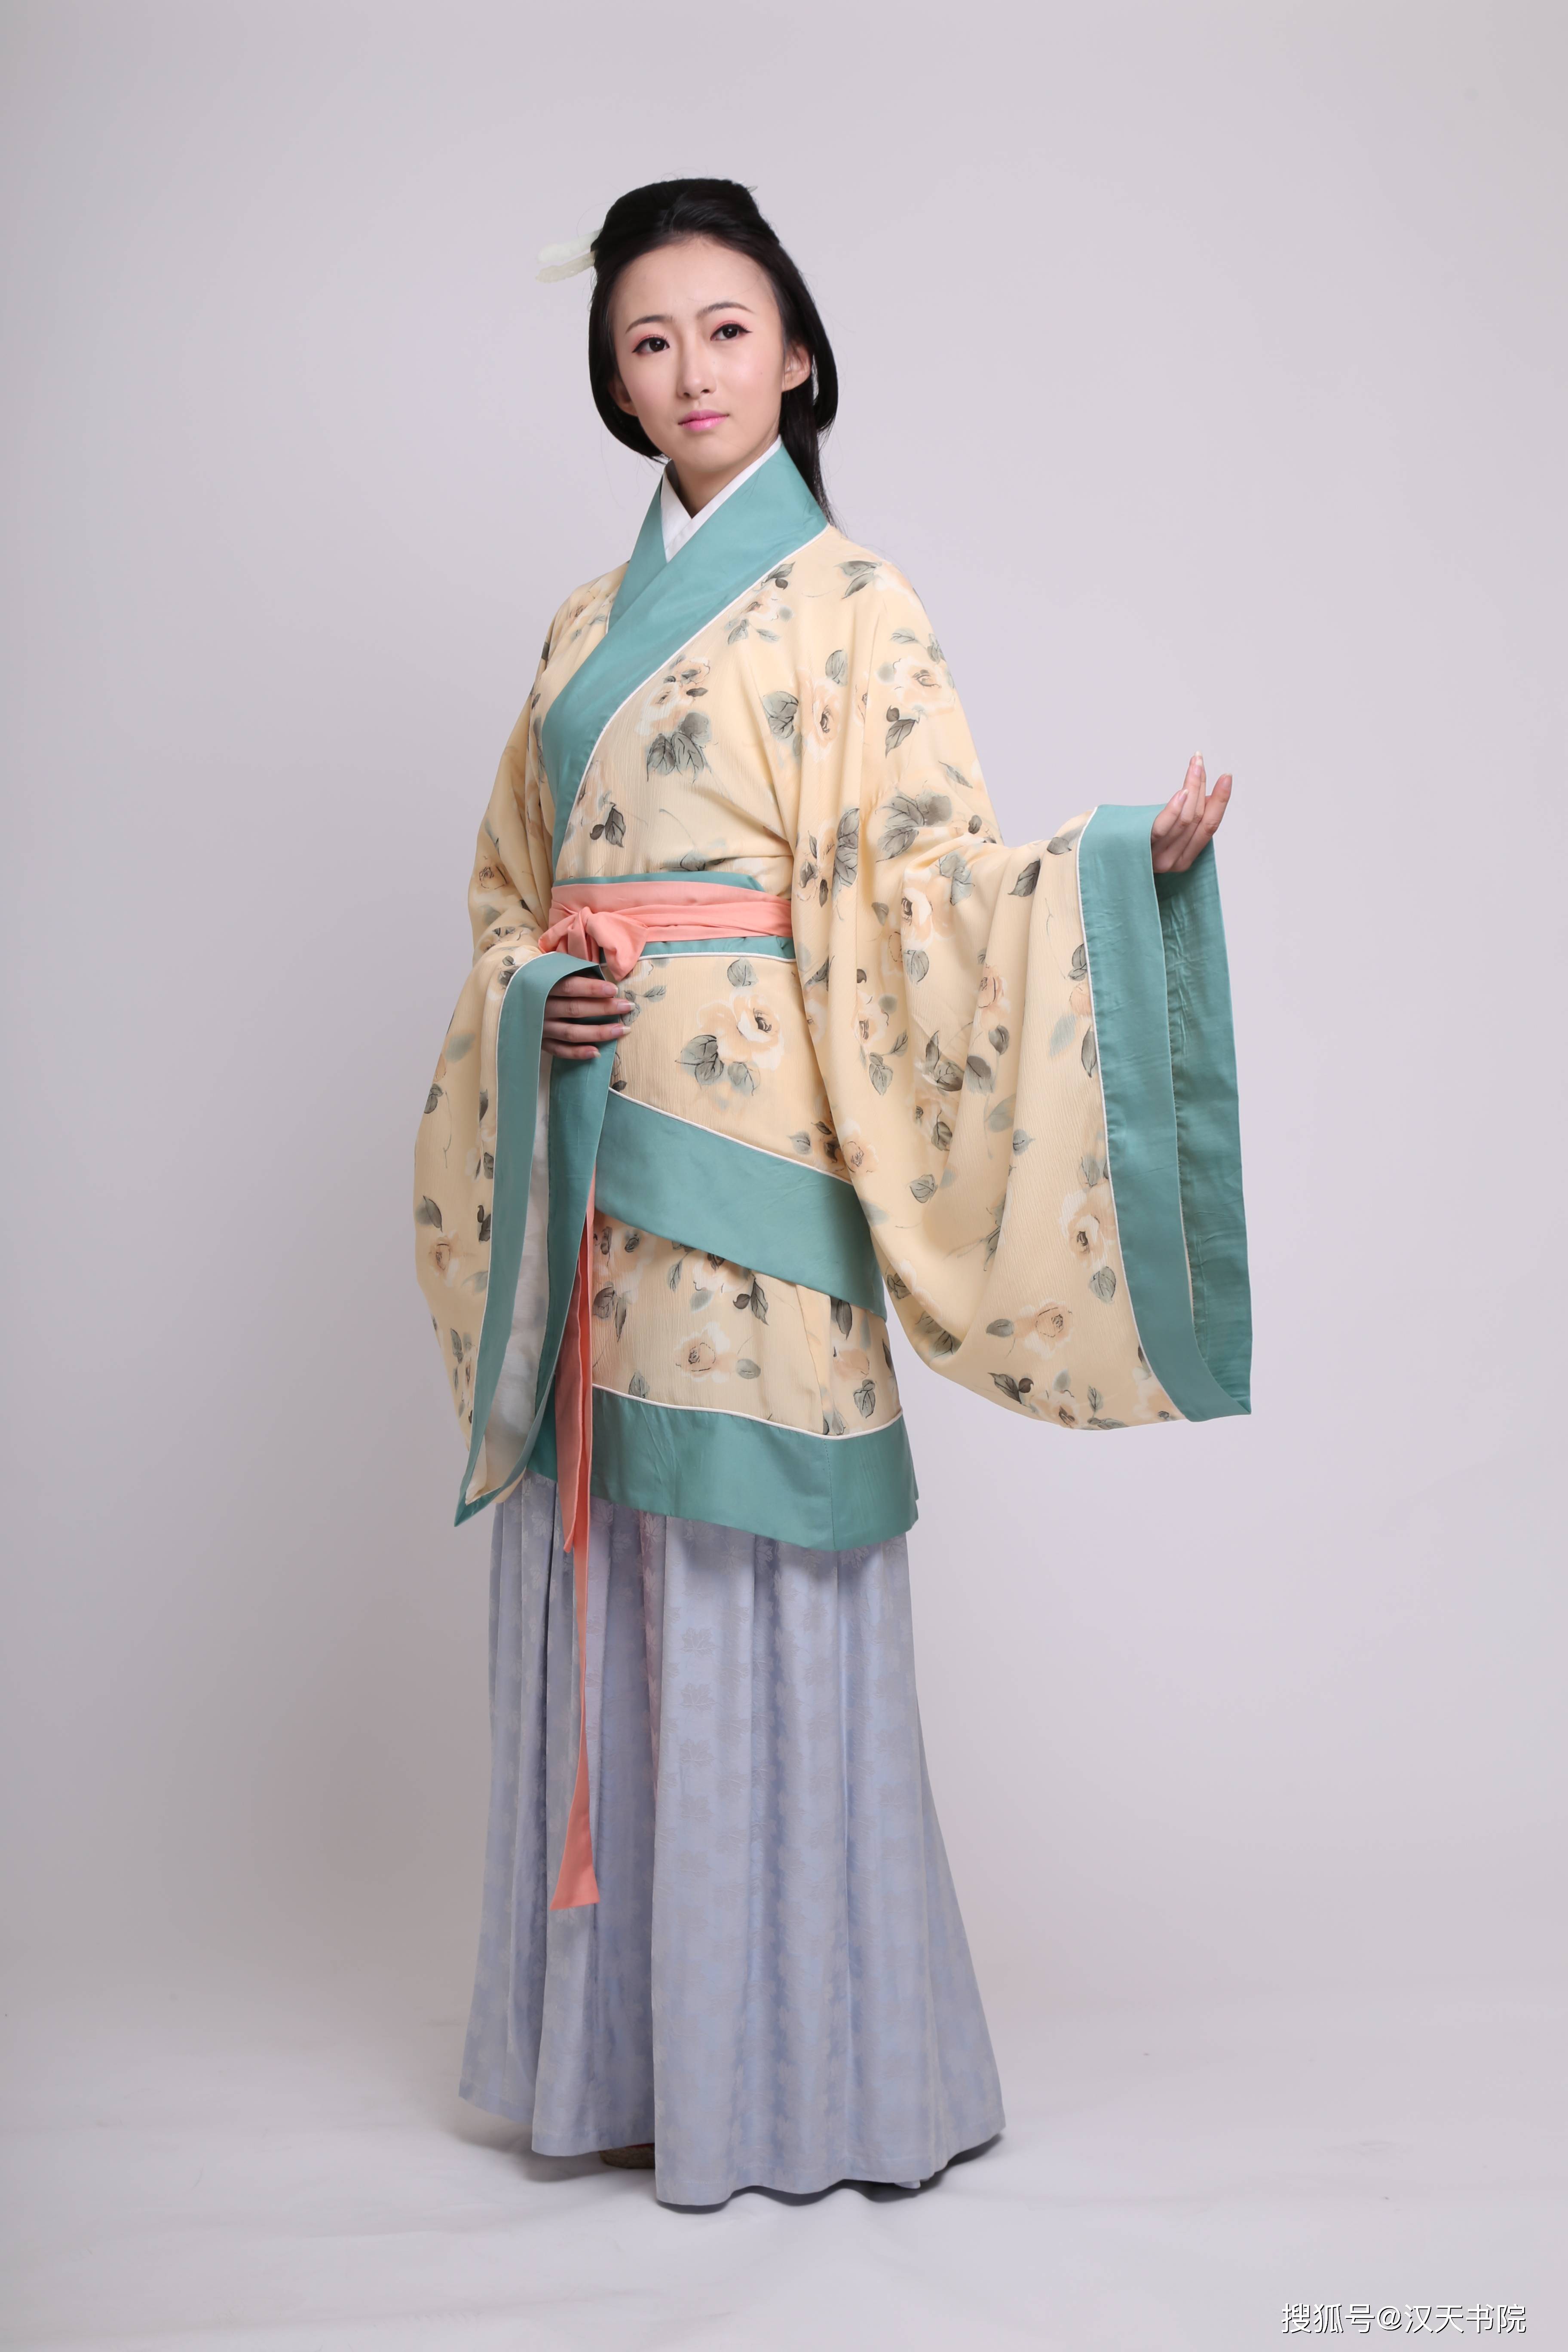 再到唐宋明,这一方便搭配的服饰,几经演化,最终成为了汉族女装的典型